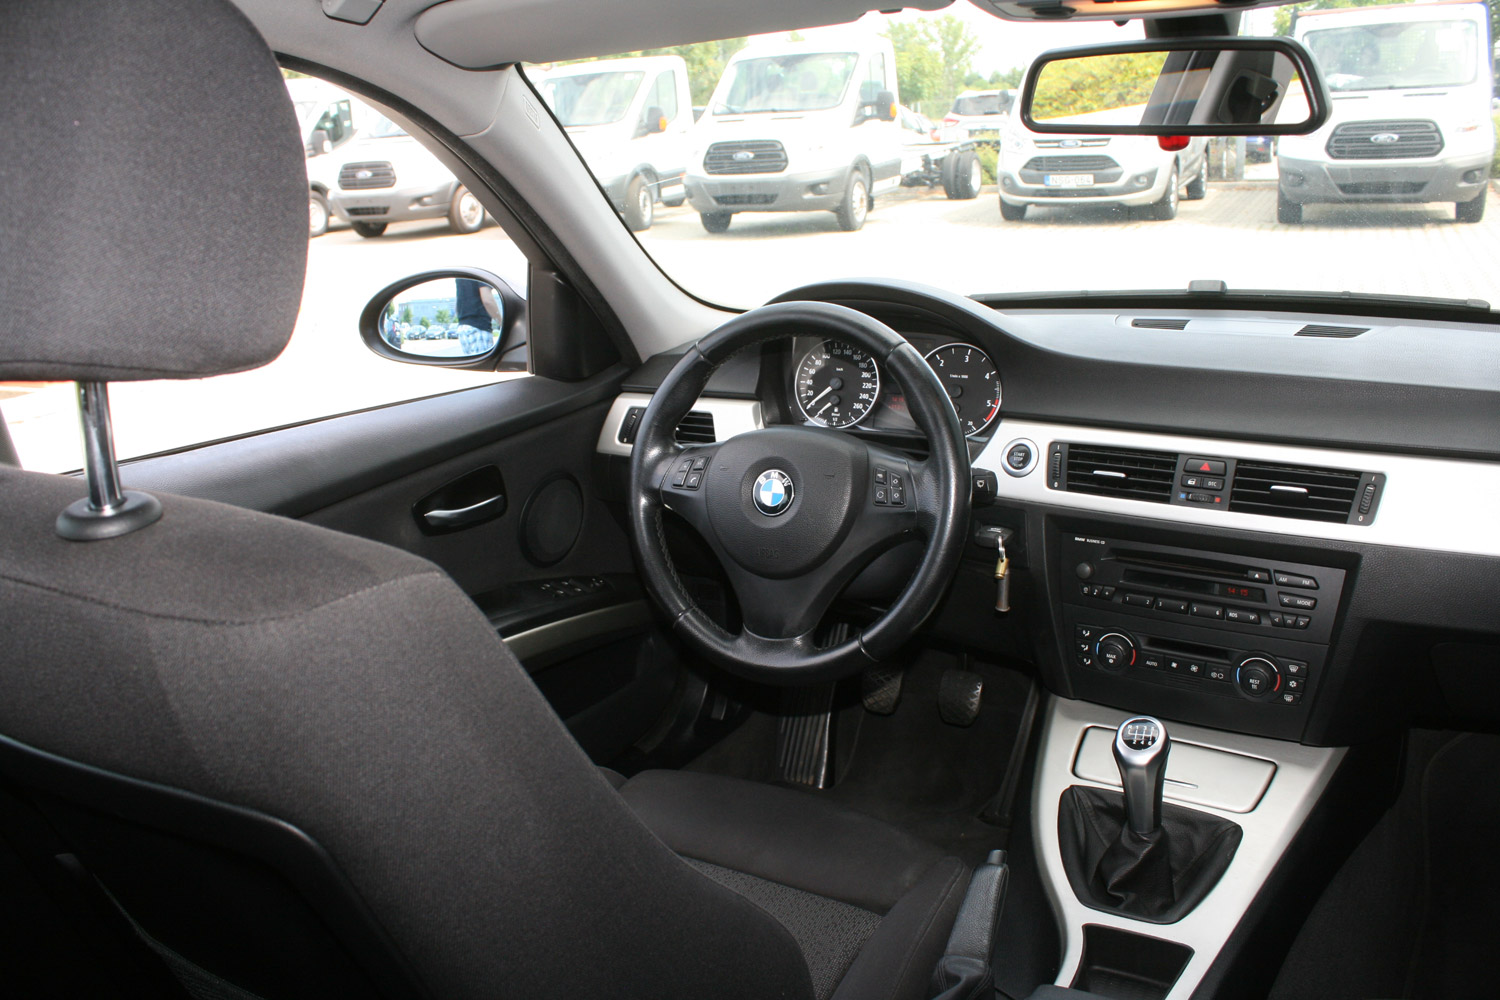 Használt autó: a magyarok kedvenc BMW-je 18